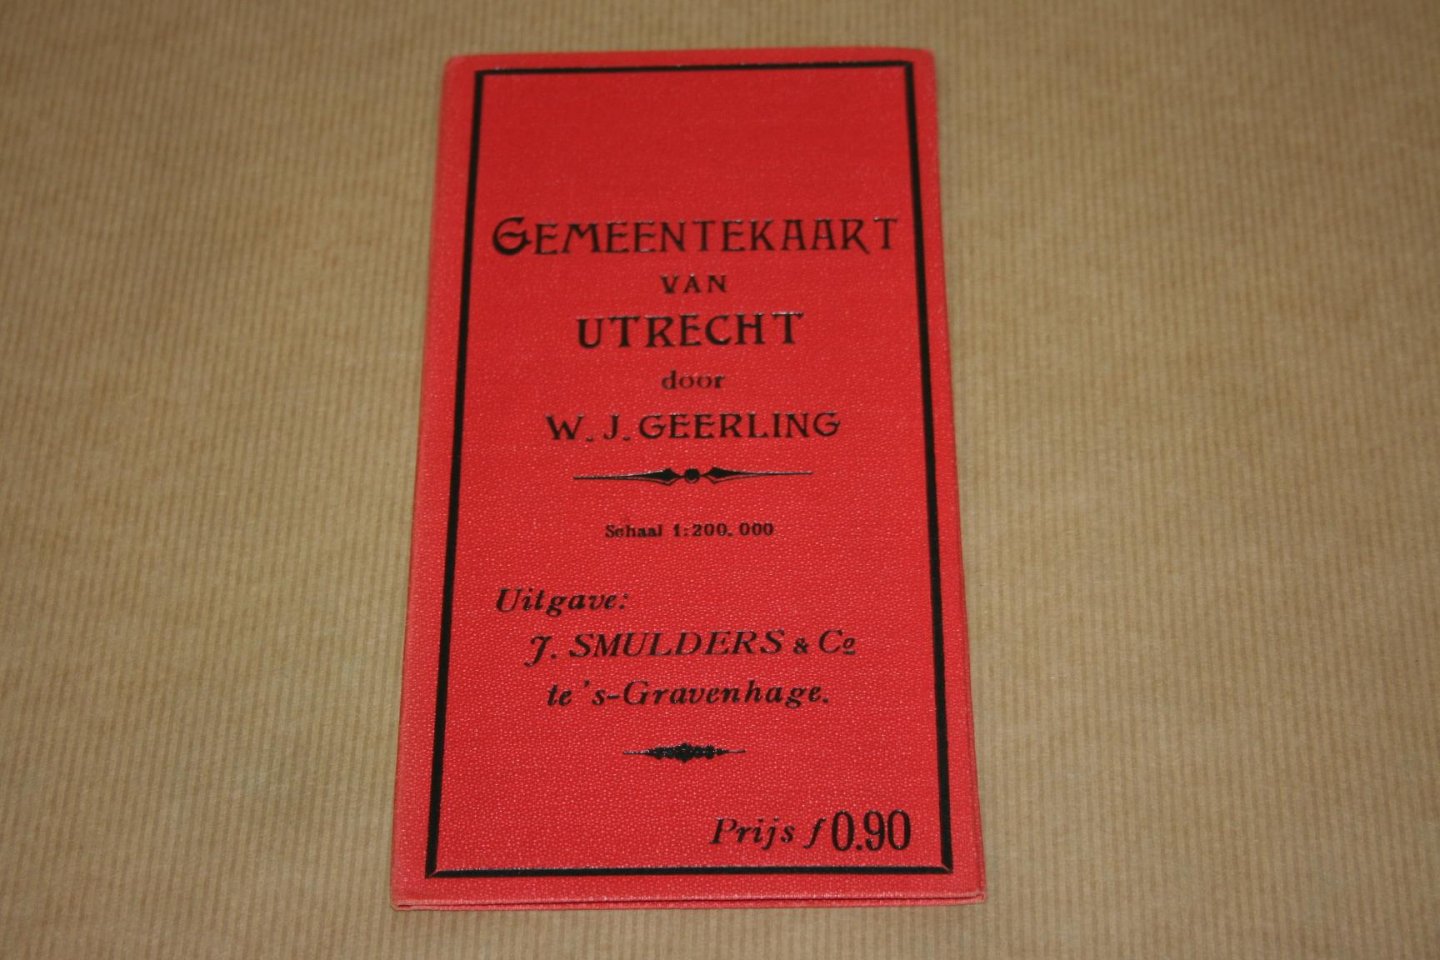 W.J. Geerling - Gemeentekaart van Utrecht